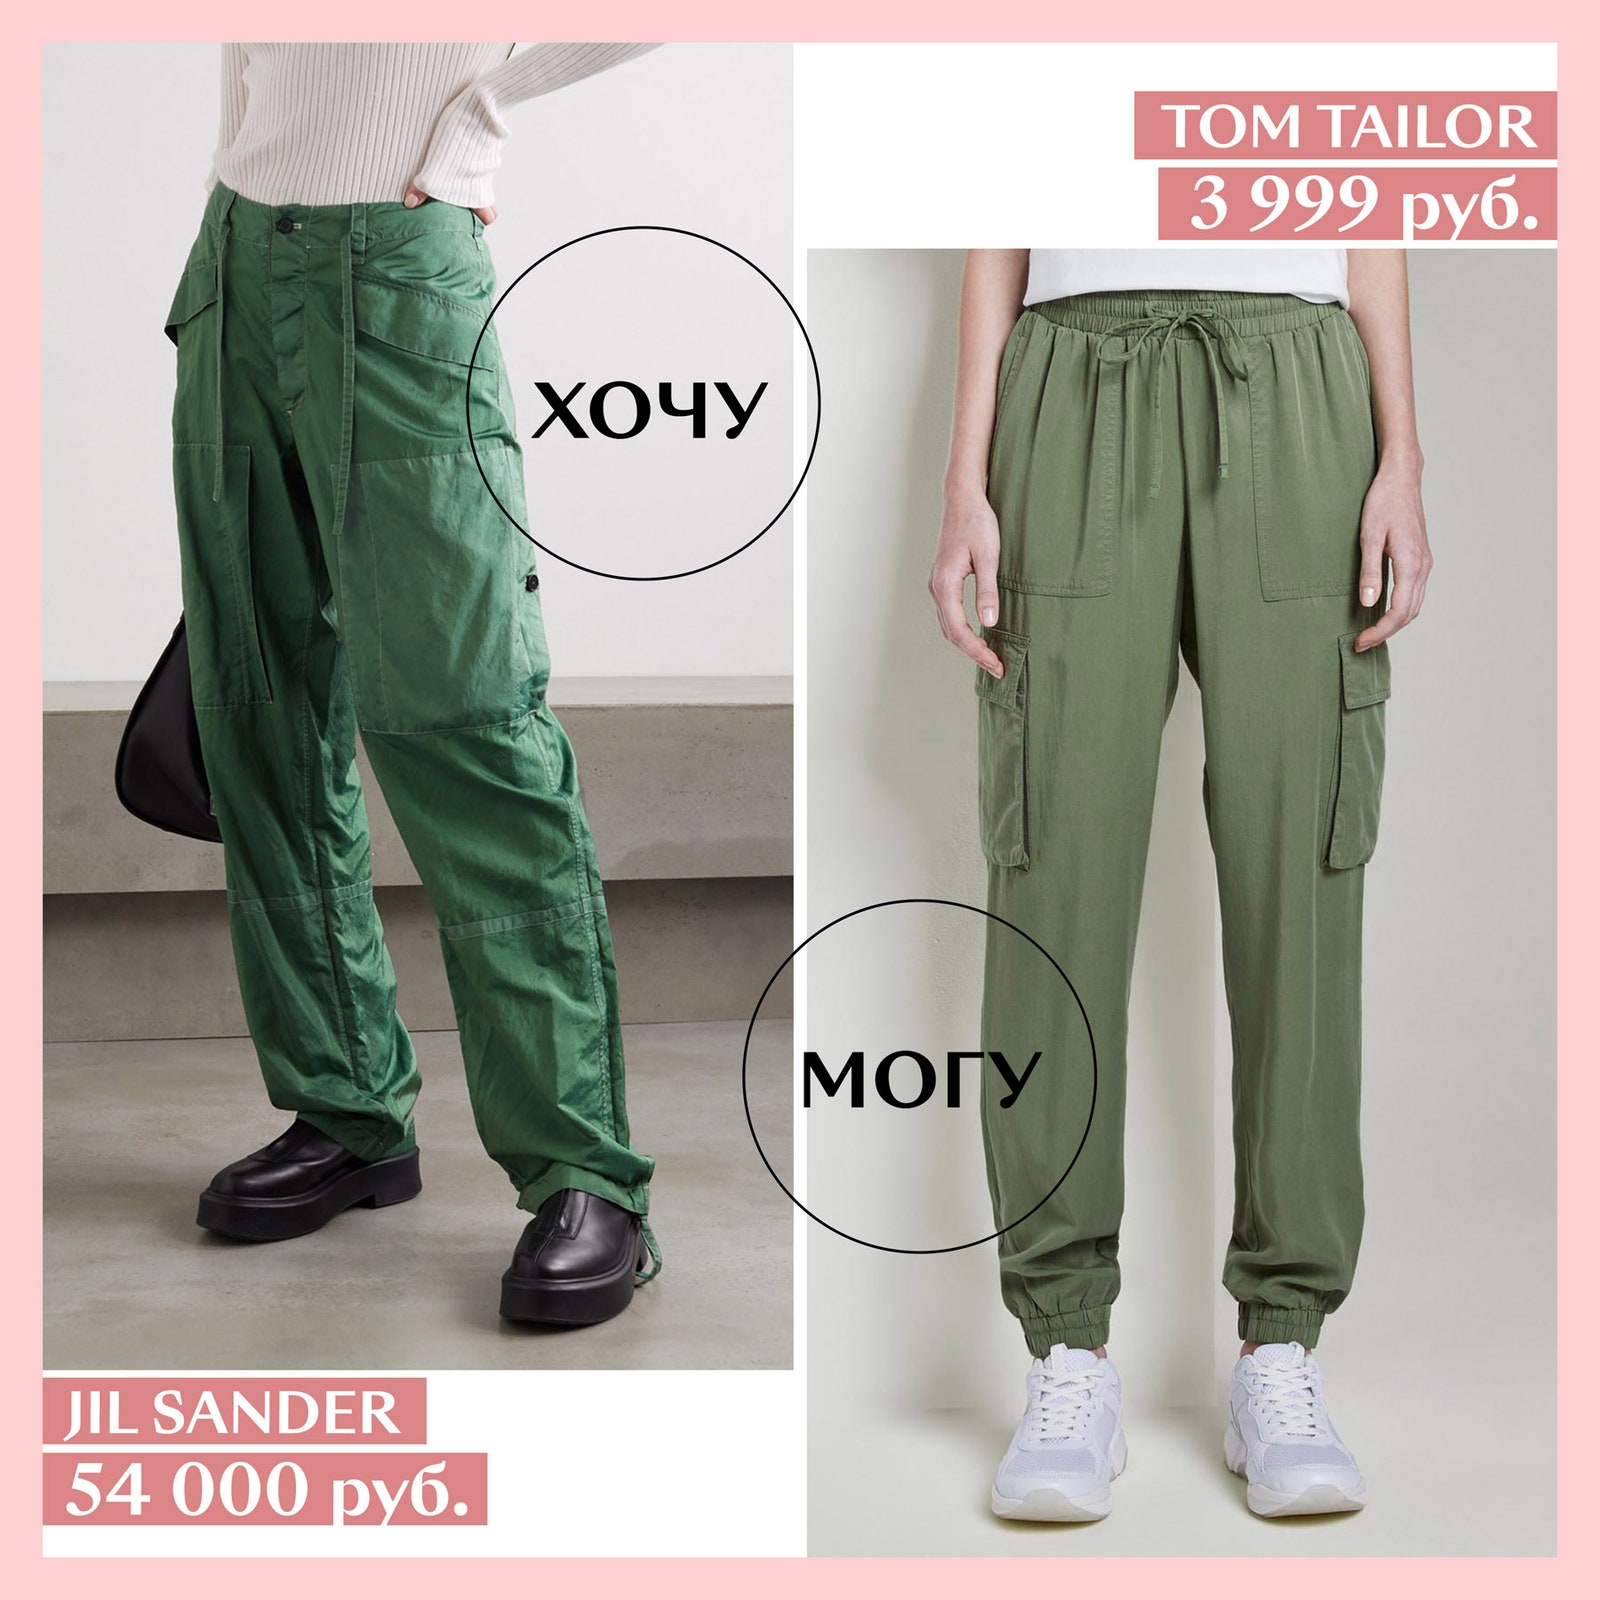 Glamour.ru выбрал самые модные брюки карго этого сезона и подобрал для них бюджетную альтернативу.